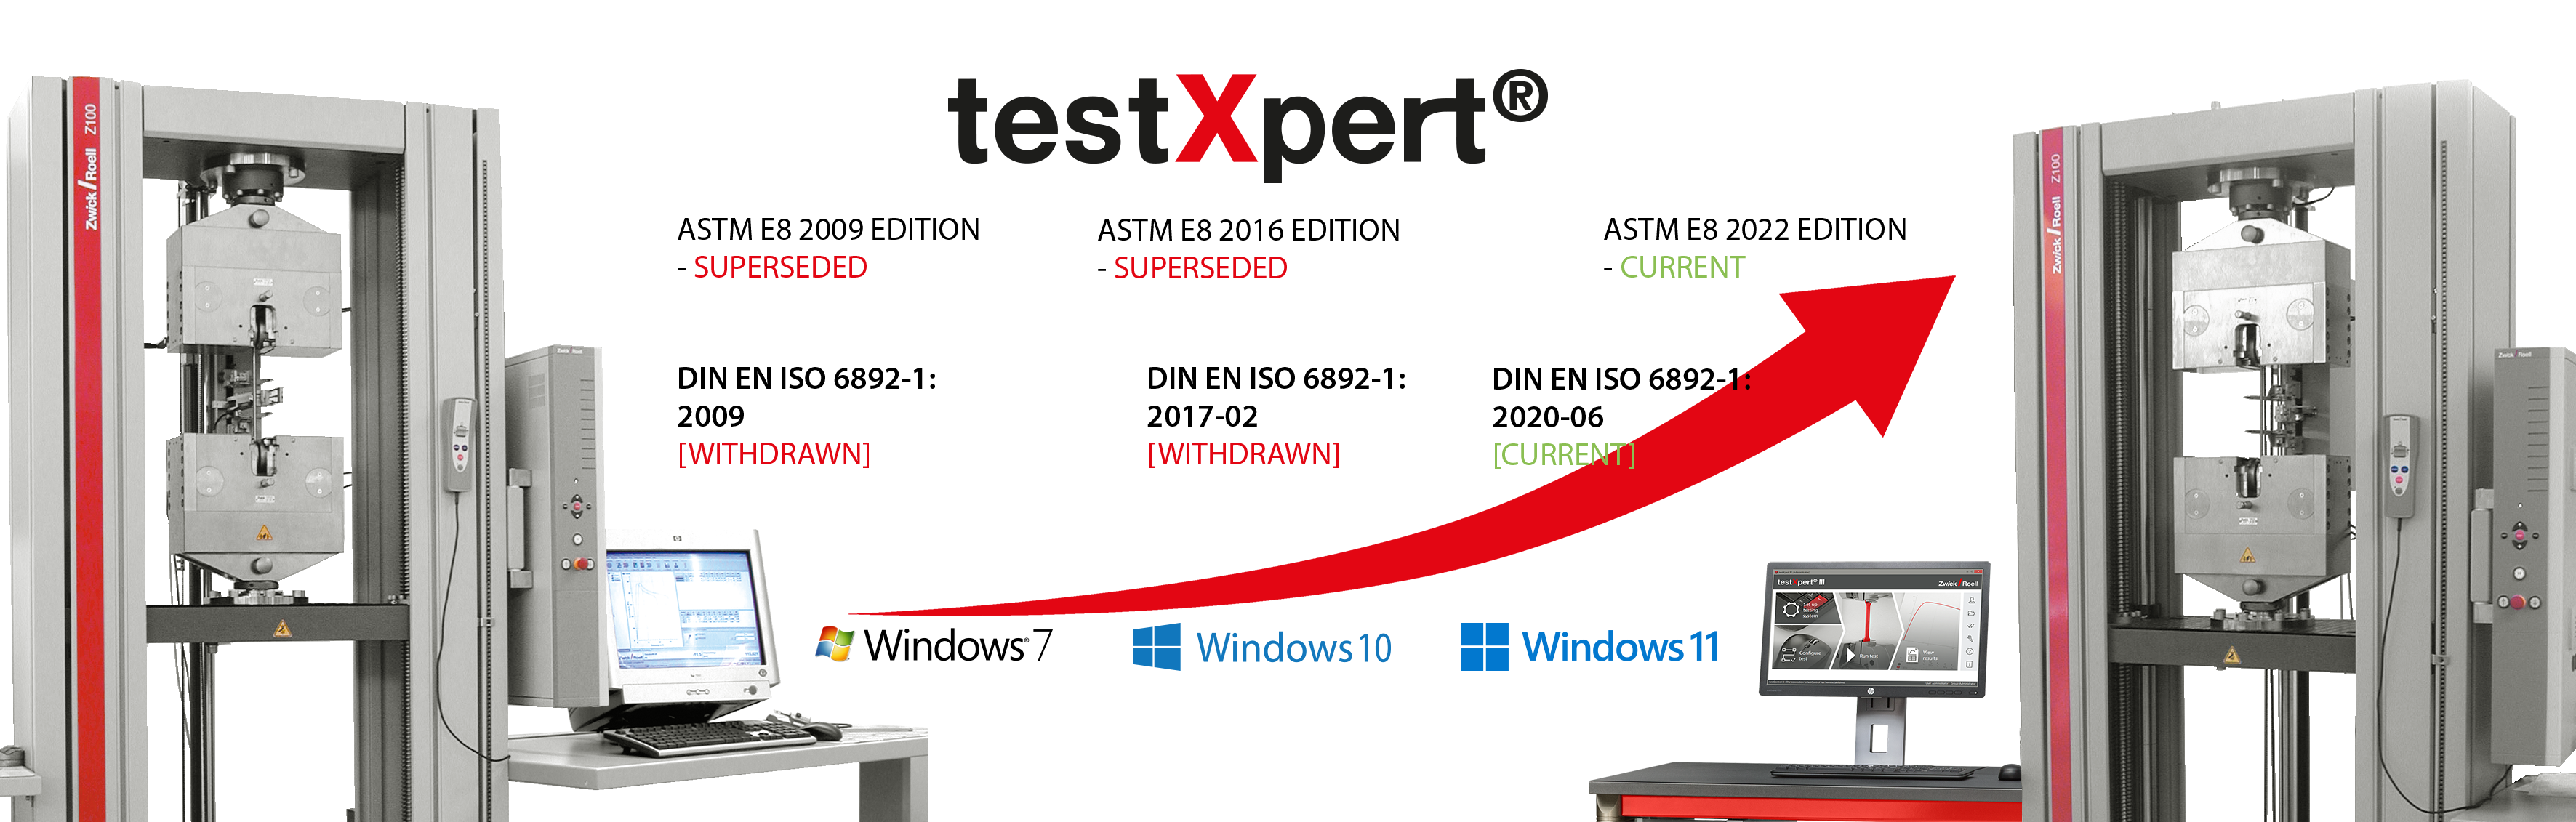 testXpert, ister standart değişiklikler olsun ister yeni bir işletim sistemi tanıtılsın, sizinle birlikte büyür